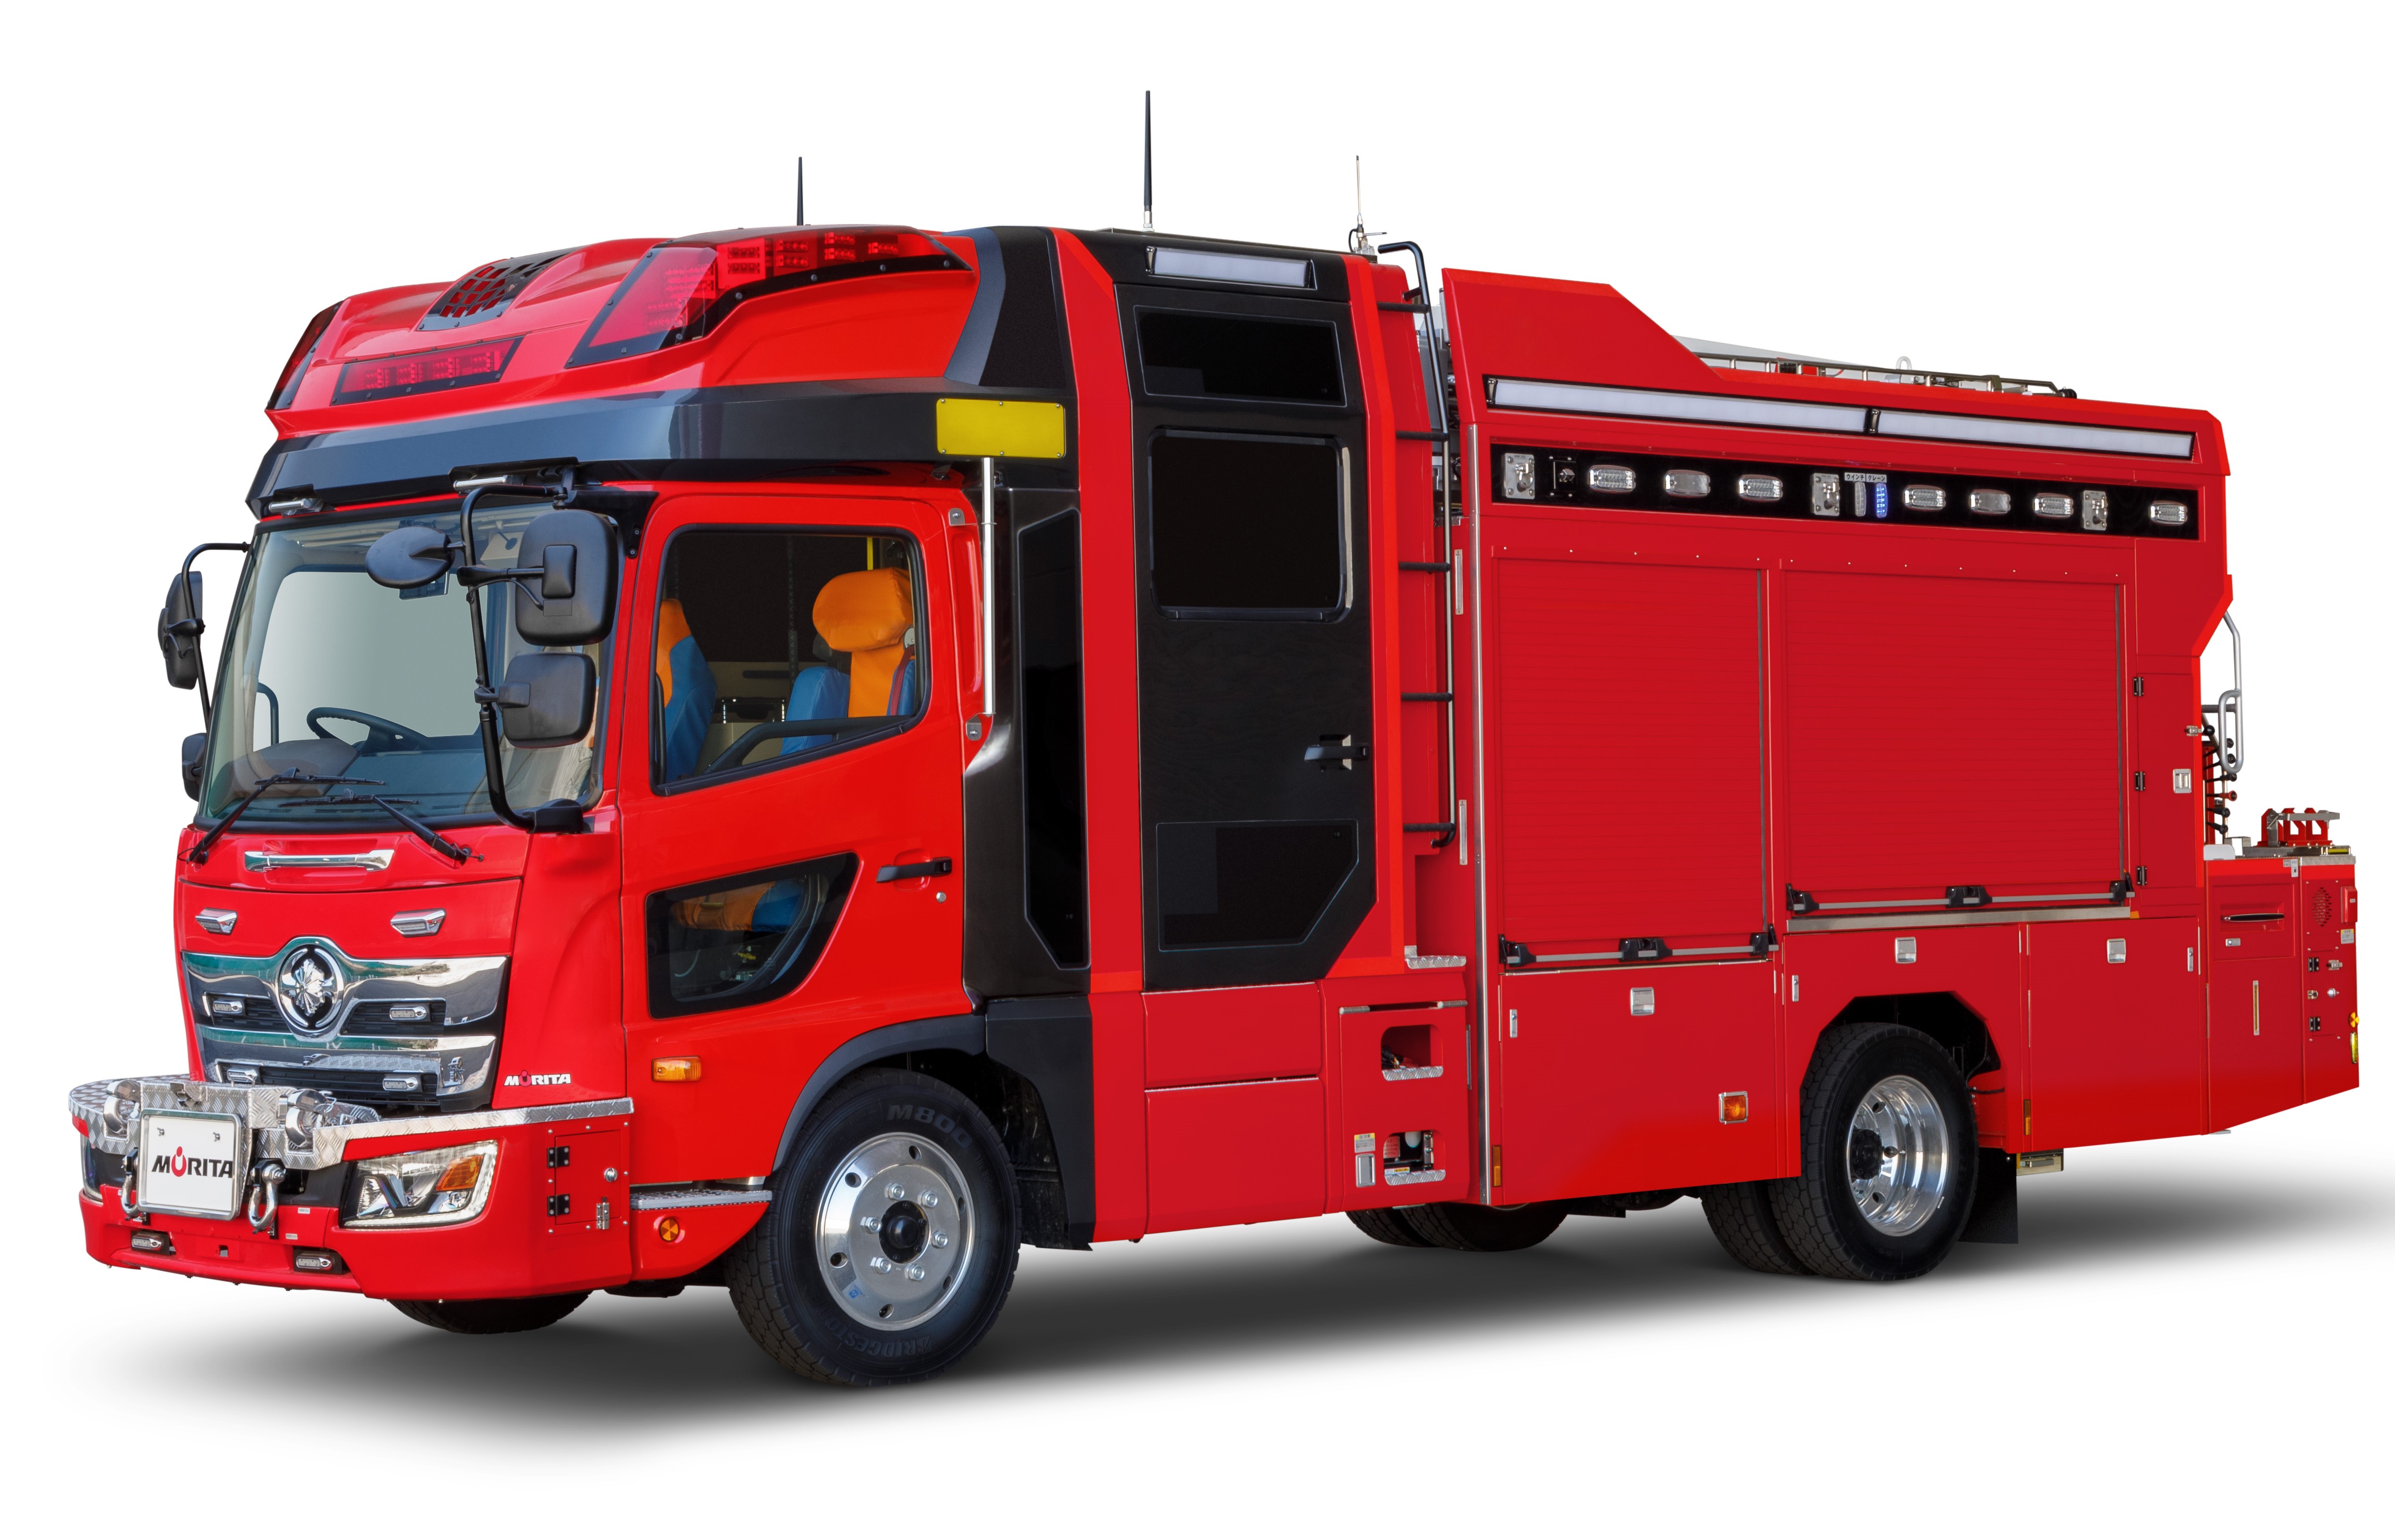 消防車のモリタ 未来の消防車 のイラストを募集 Sankeibiz サンケイビズ 自分を磨く経済情報サイト